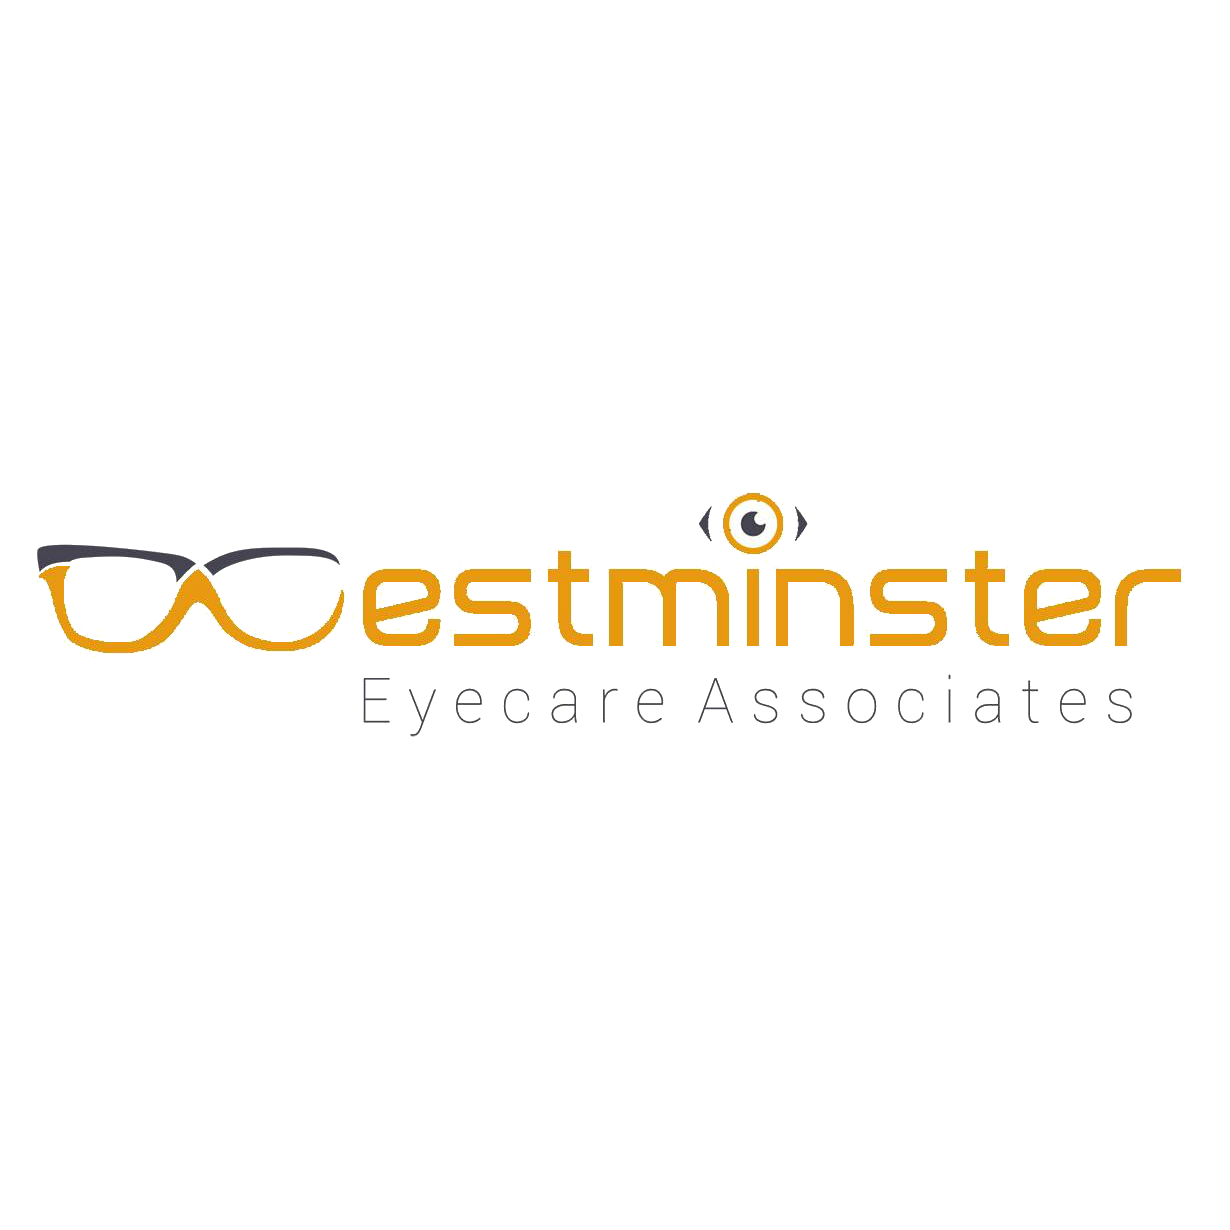 Westminster Eyecare Associates Inc Logo